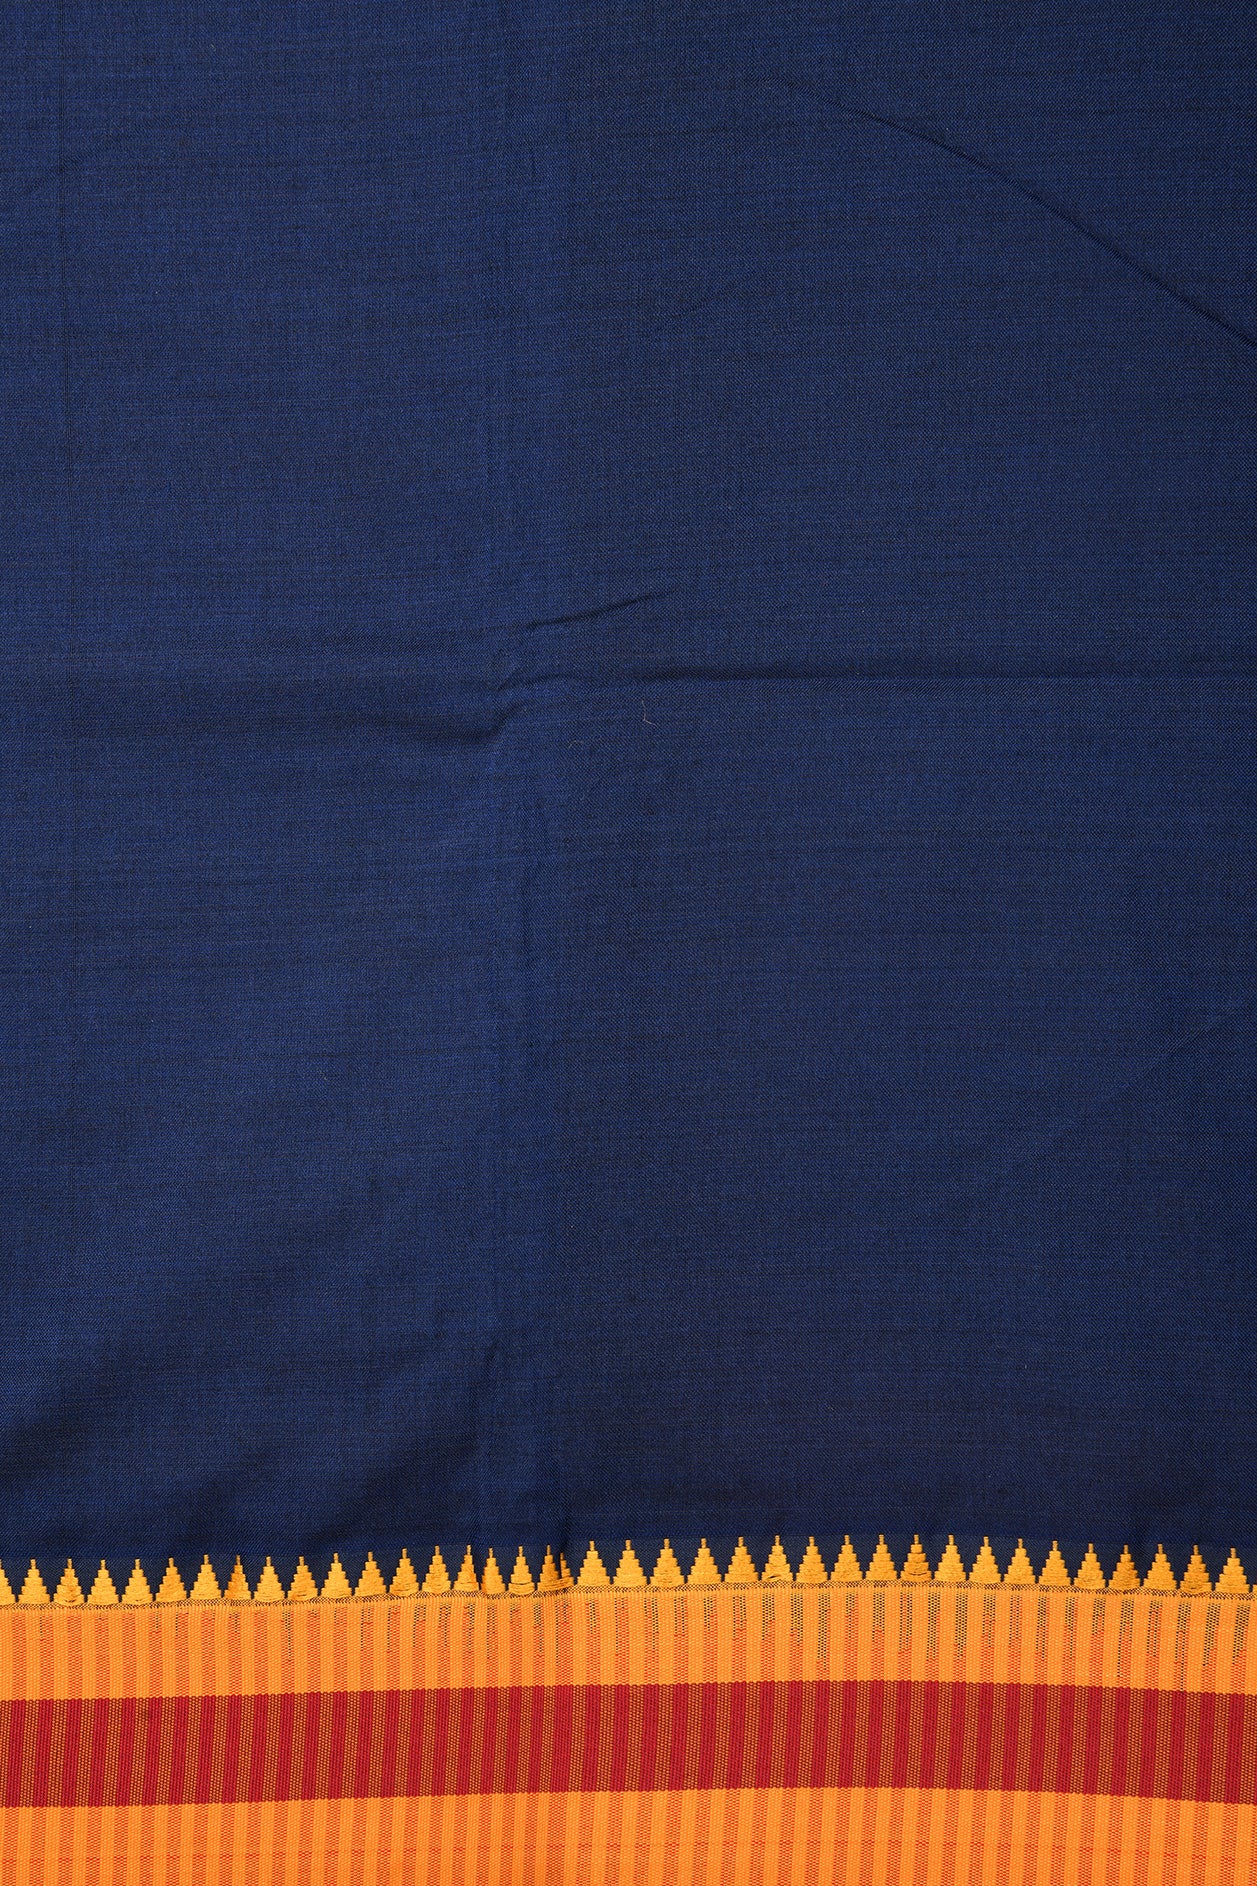 Indigo Blue Dharwad Cotton Saree